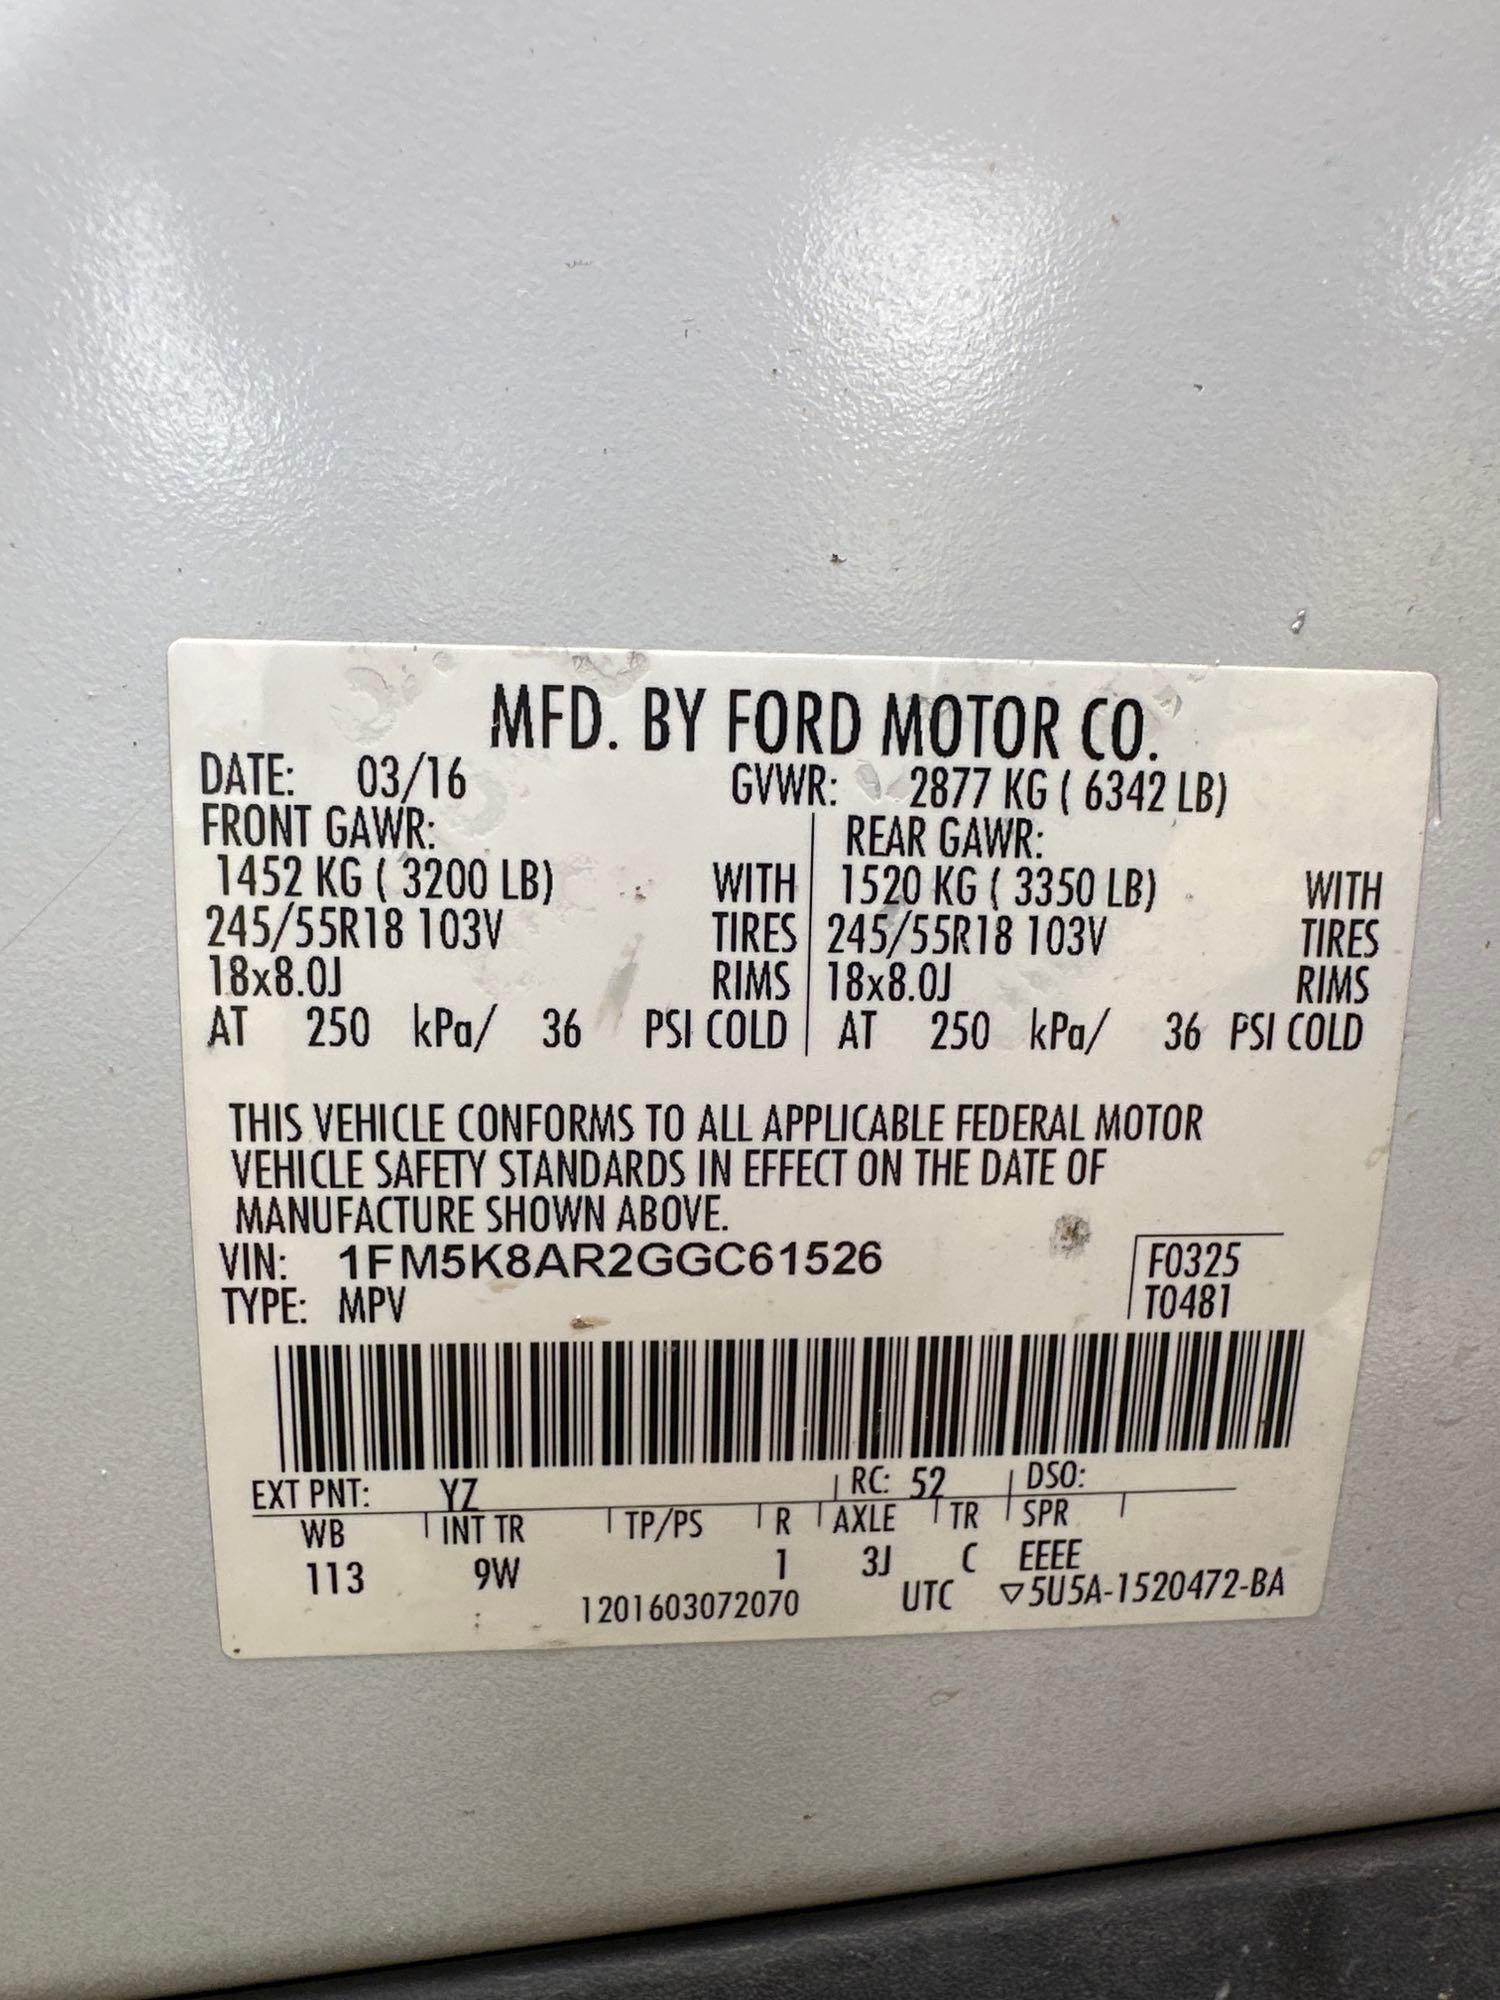 2016 Ford Explorer Multipurpose Vehicle (MPV), VIN # 1FM5K8AR2GGC61526